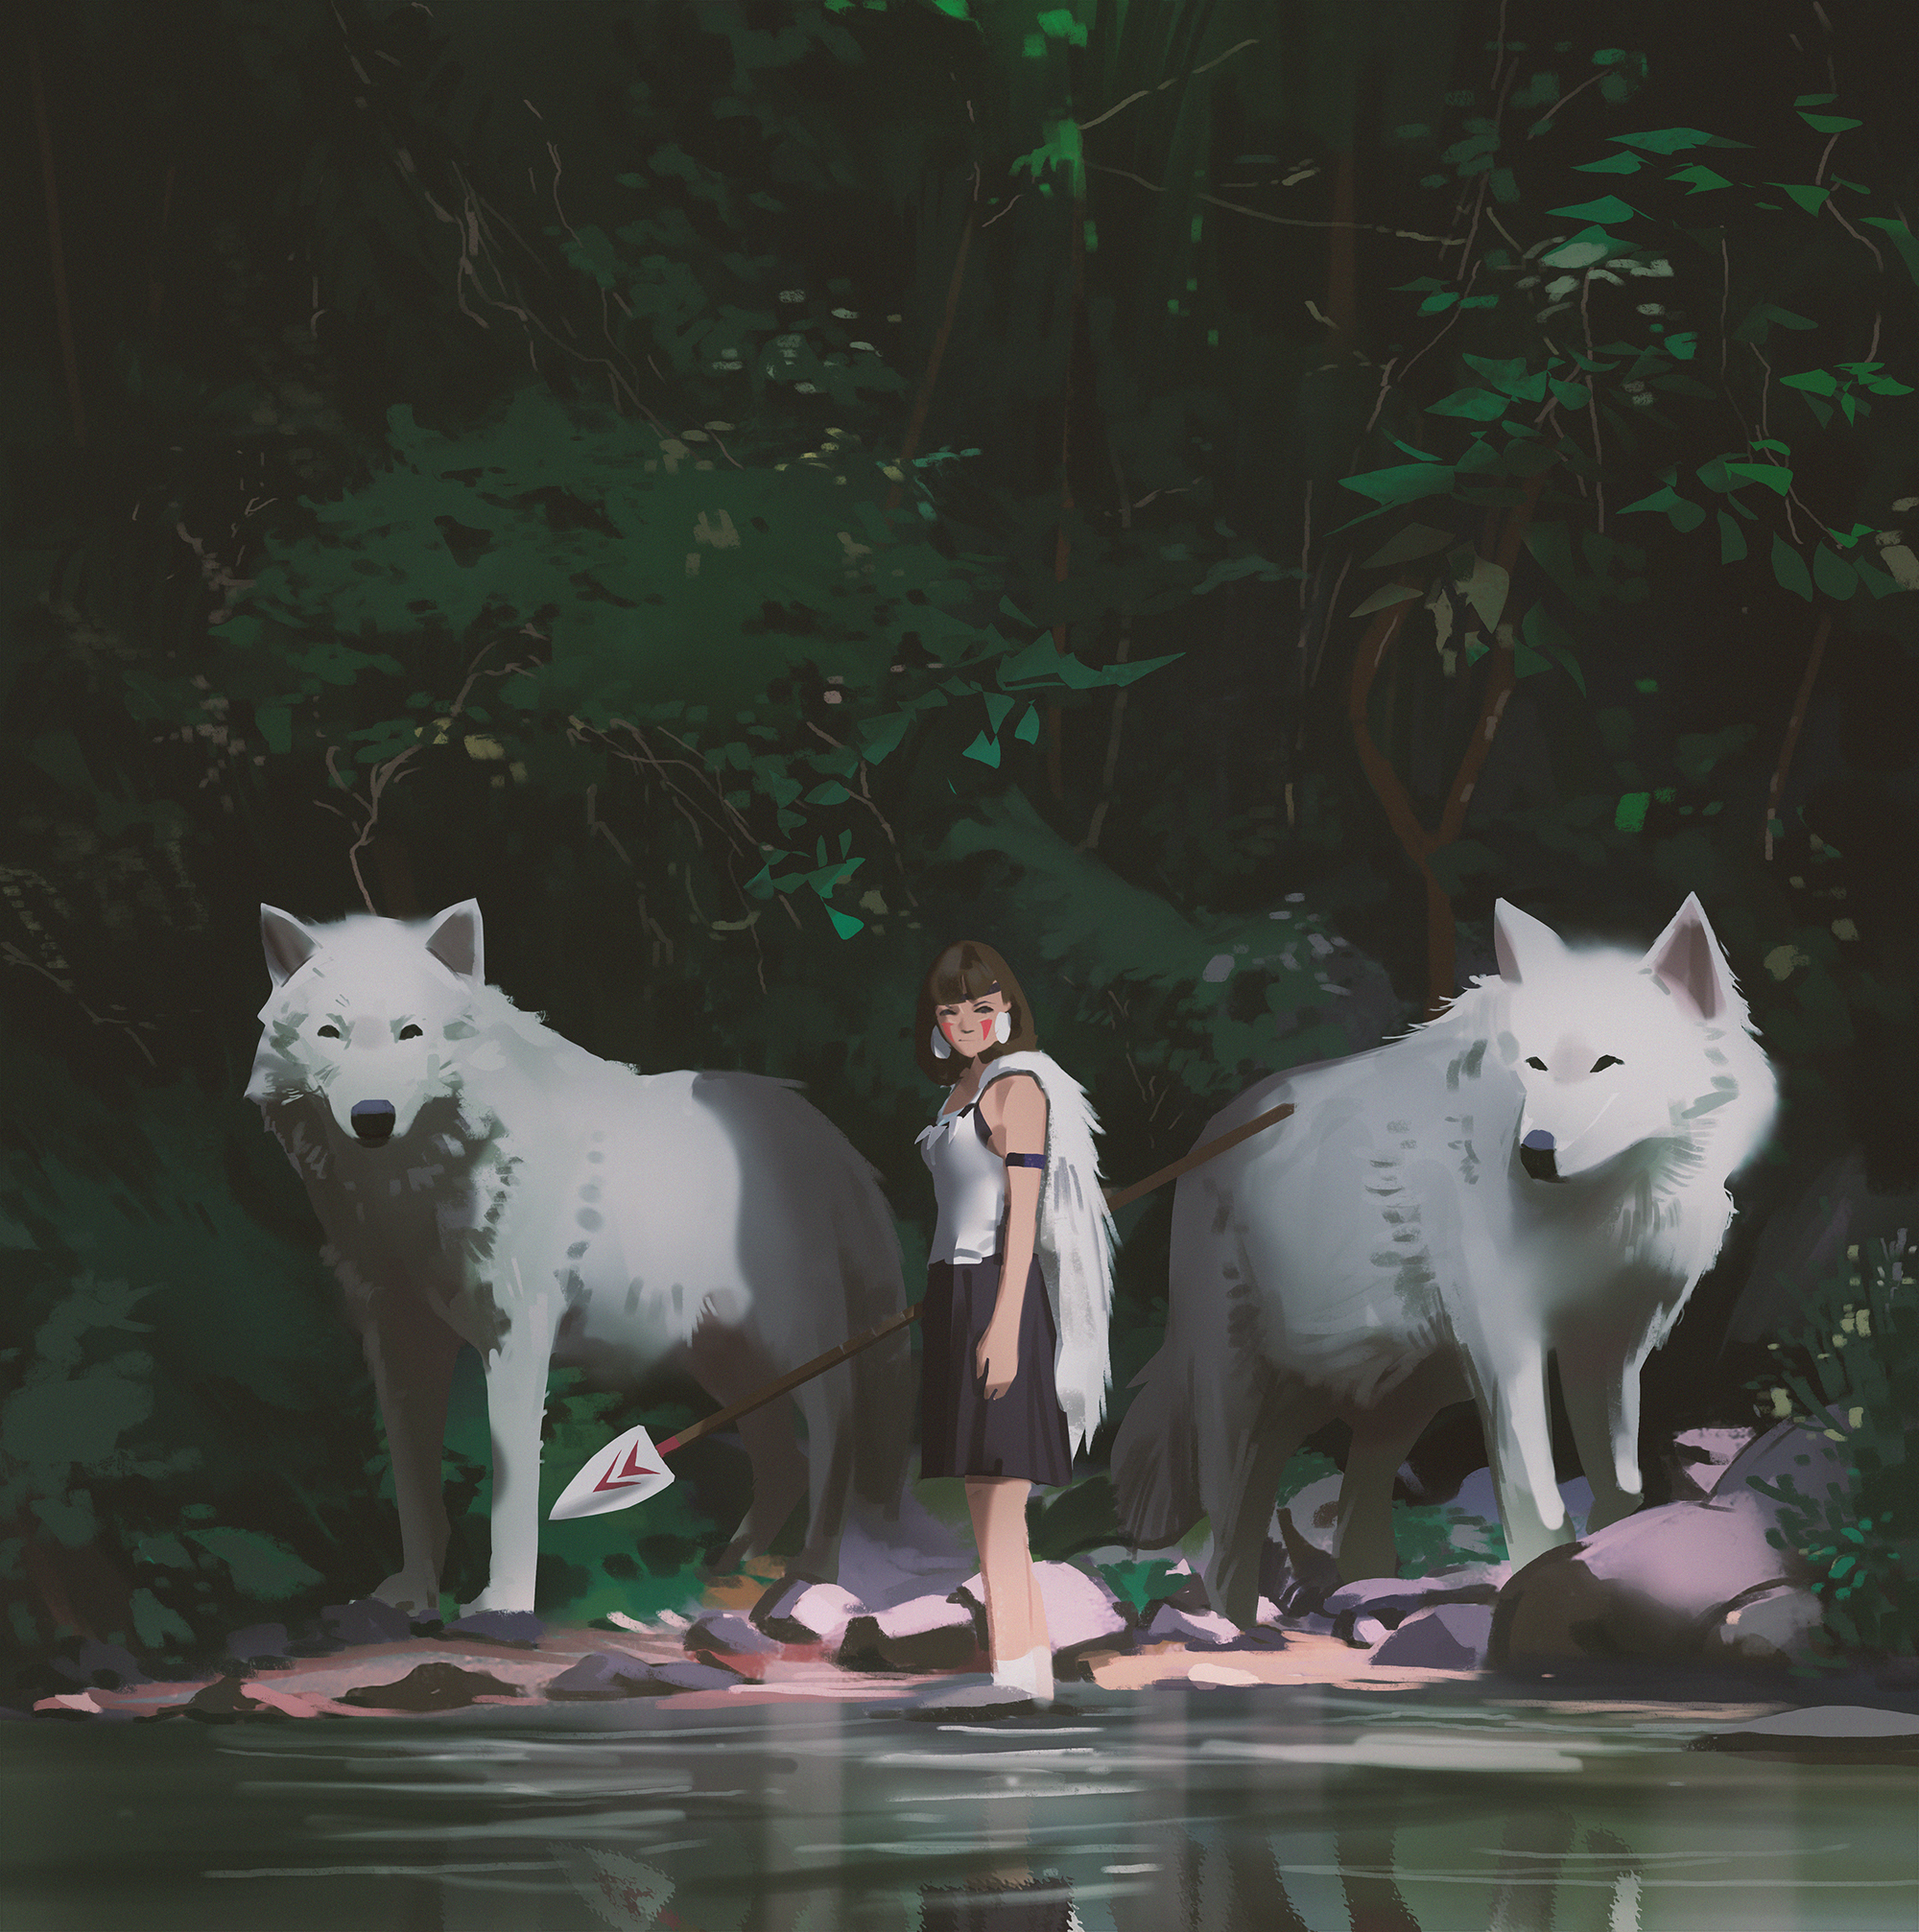 Princess Mononoke Studio Ghibli Anime Anime Girls Women Brunette Wolf Fantasy Art Spear River Forest 2000x2014